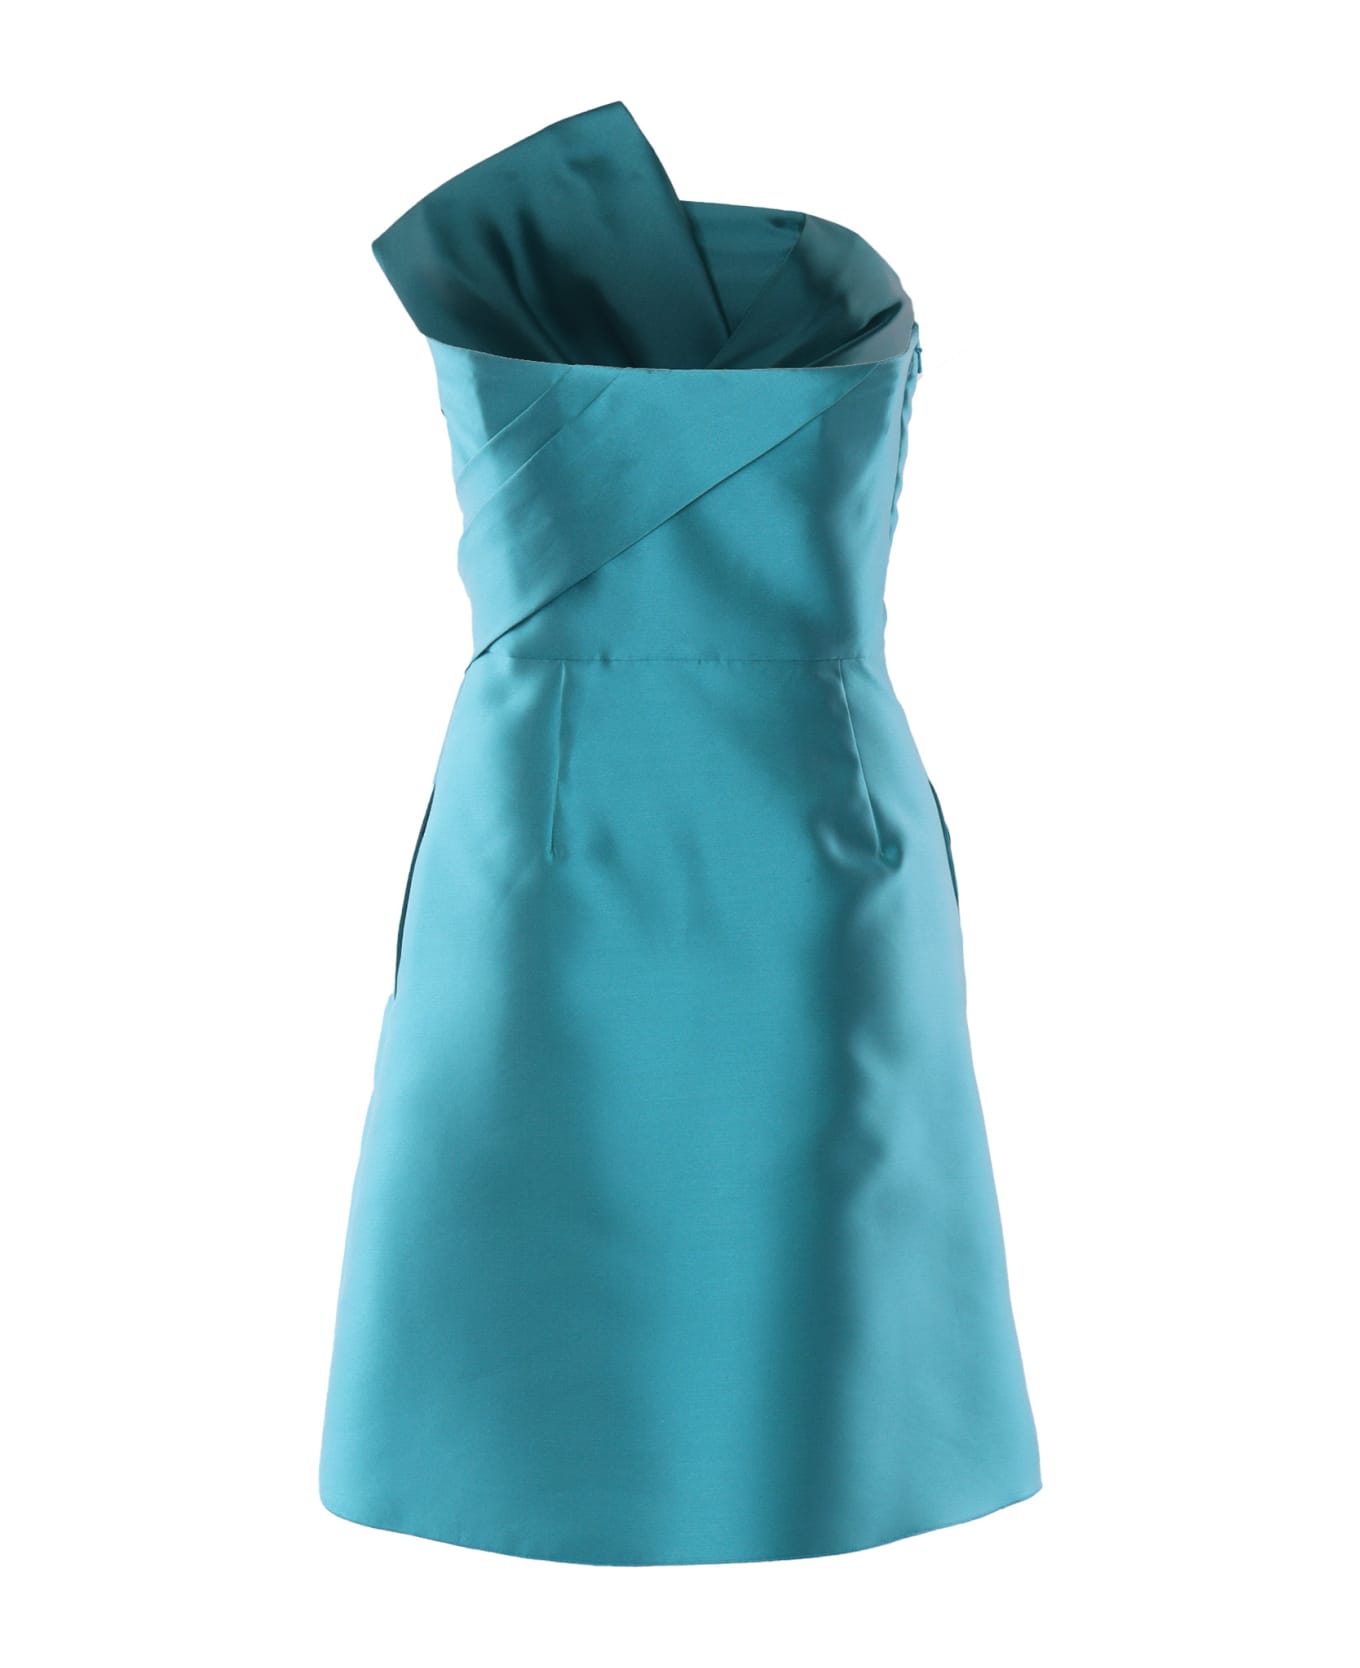 Alberta Ferretti Short Turquoise Dress - LIGHT BLUE ニットウェア